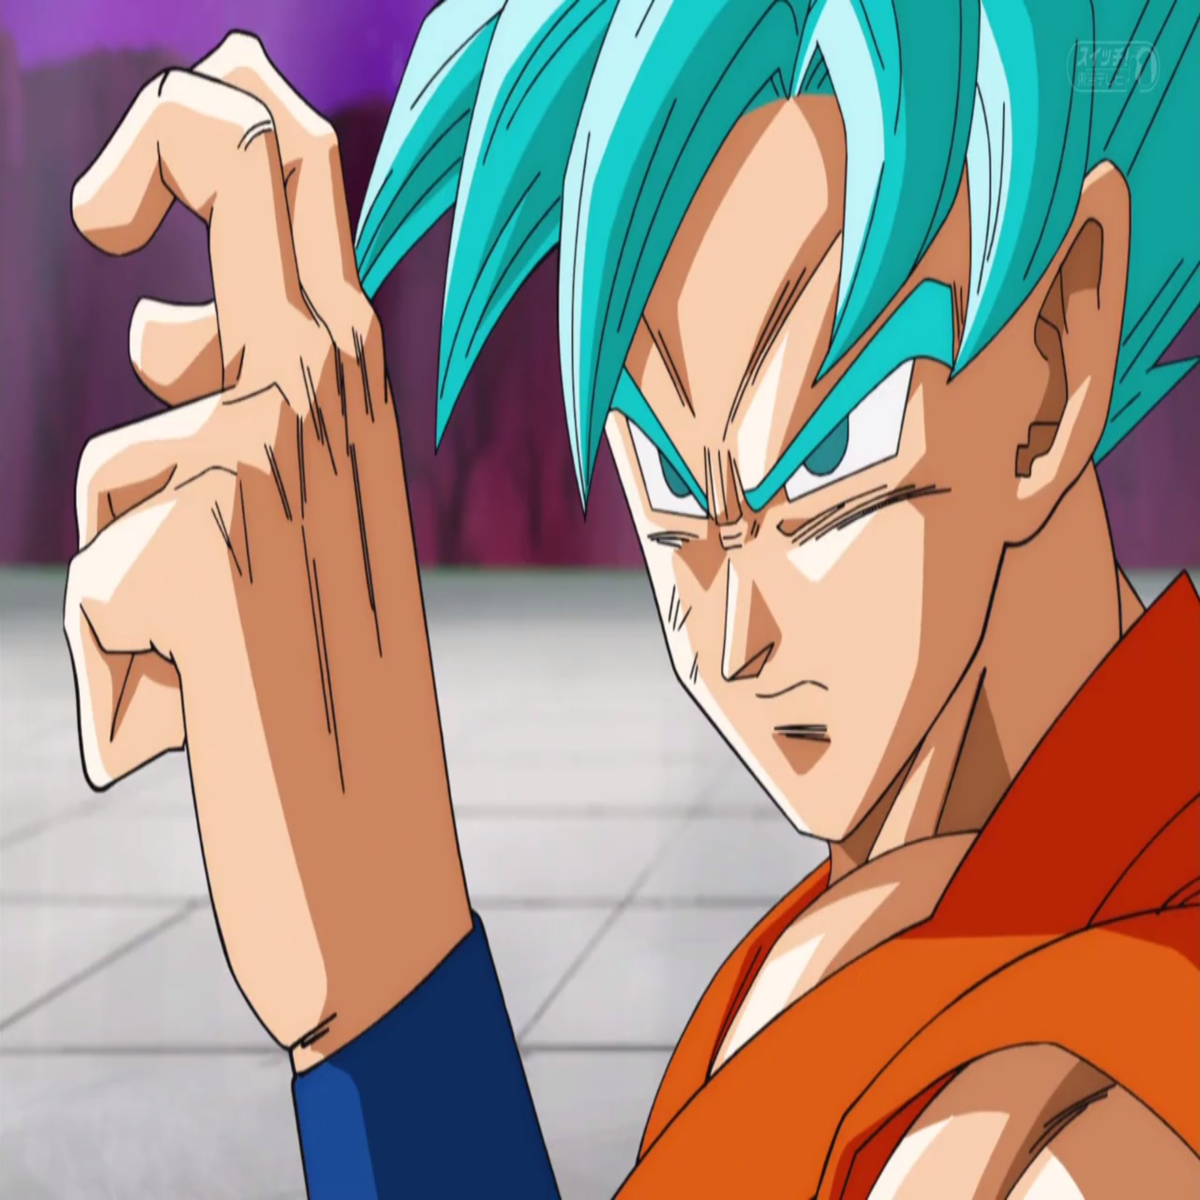 Dragon Ball Super  Nova habilidade de Goku e referência a